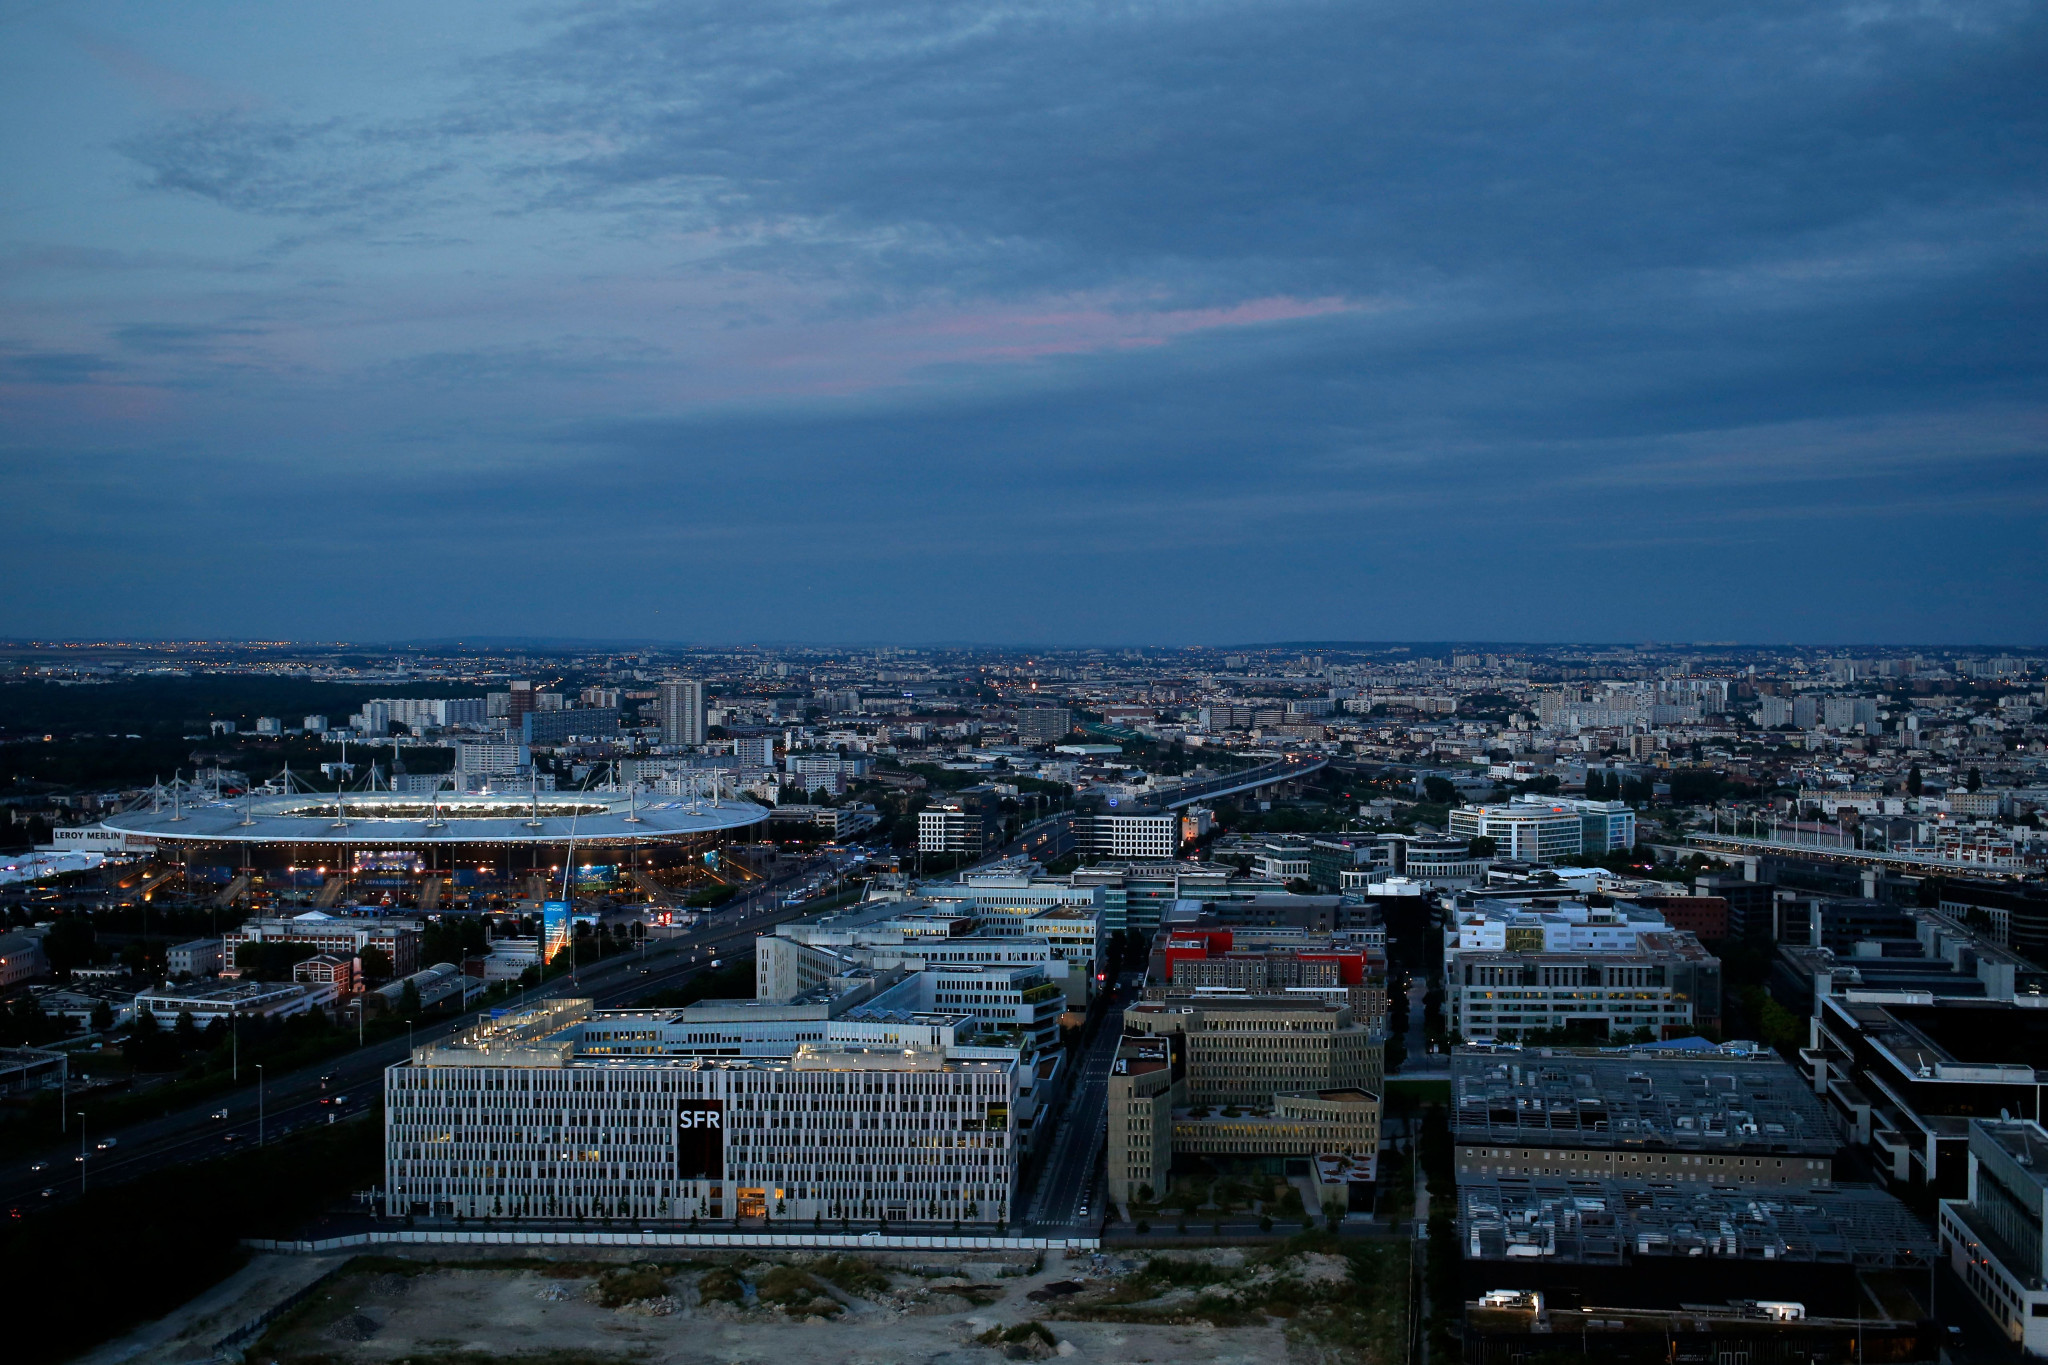 Saint-Denis is an integral part of Paris 2024 preparations, according to Tony Estanguet ©Getty Images